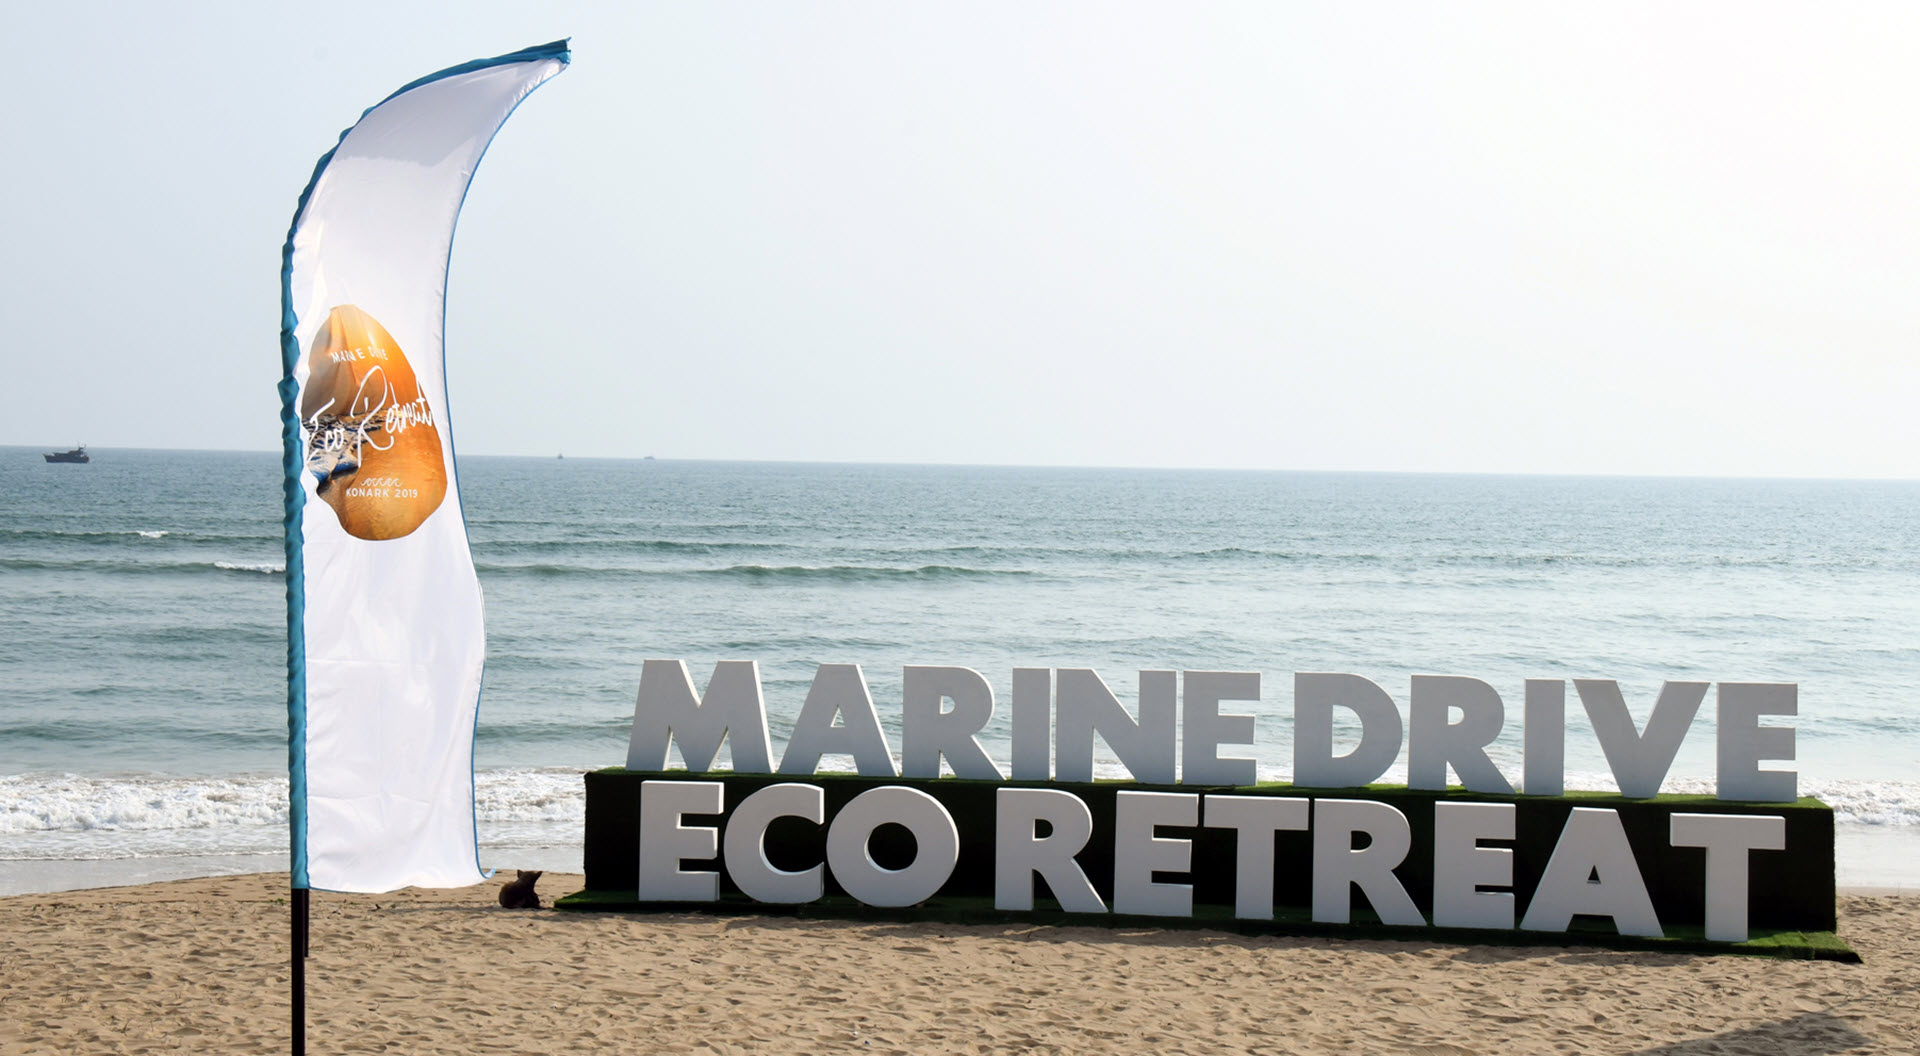 marine drive_eco retreat